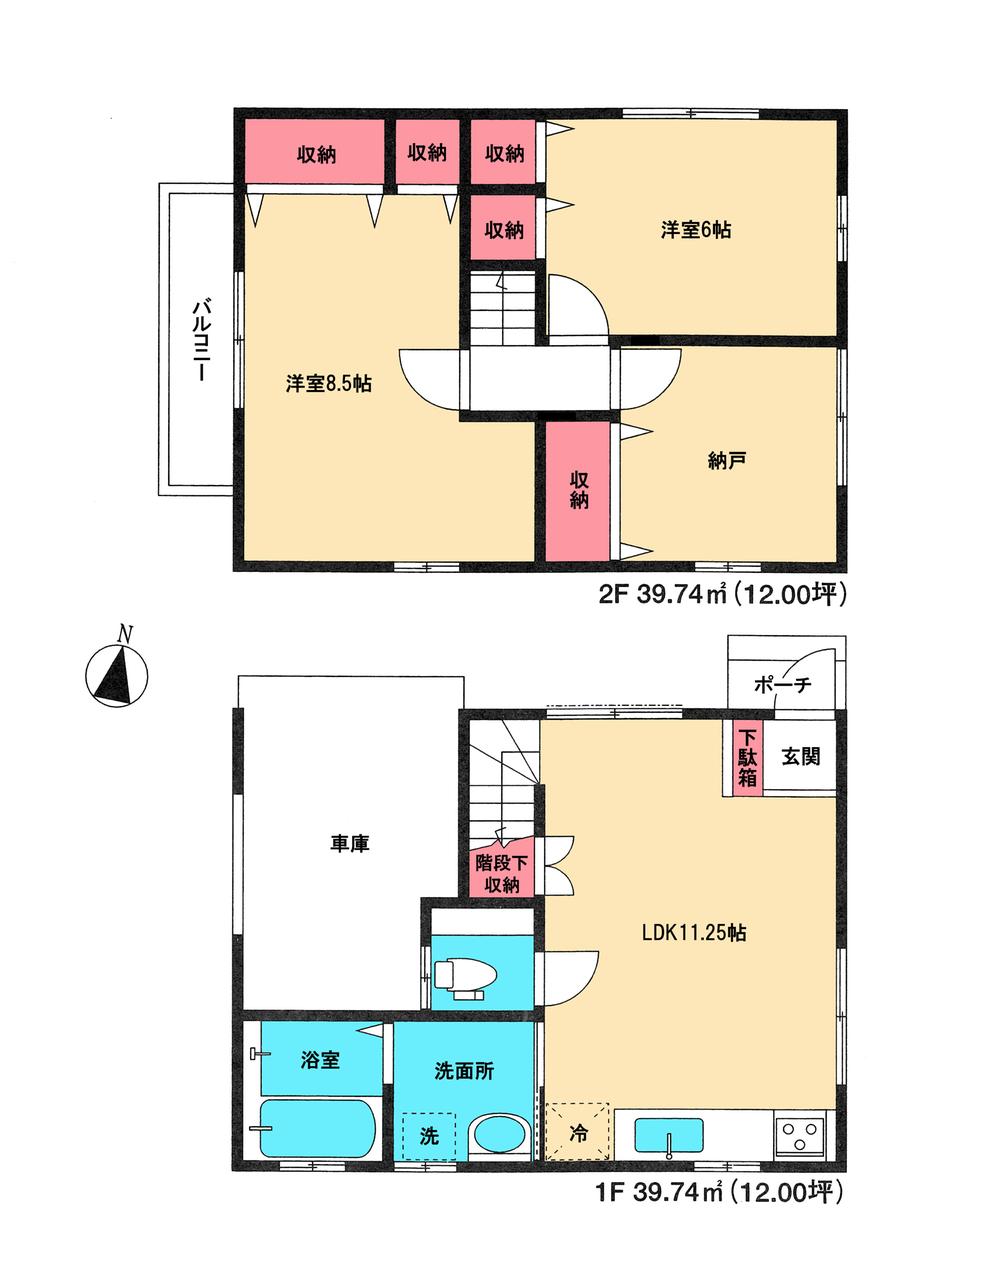 Floor plan. 16.8 million yen, 3LDK, Land area 66.68 sq m , Building area 79.48 sq m